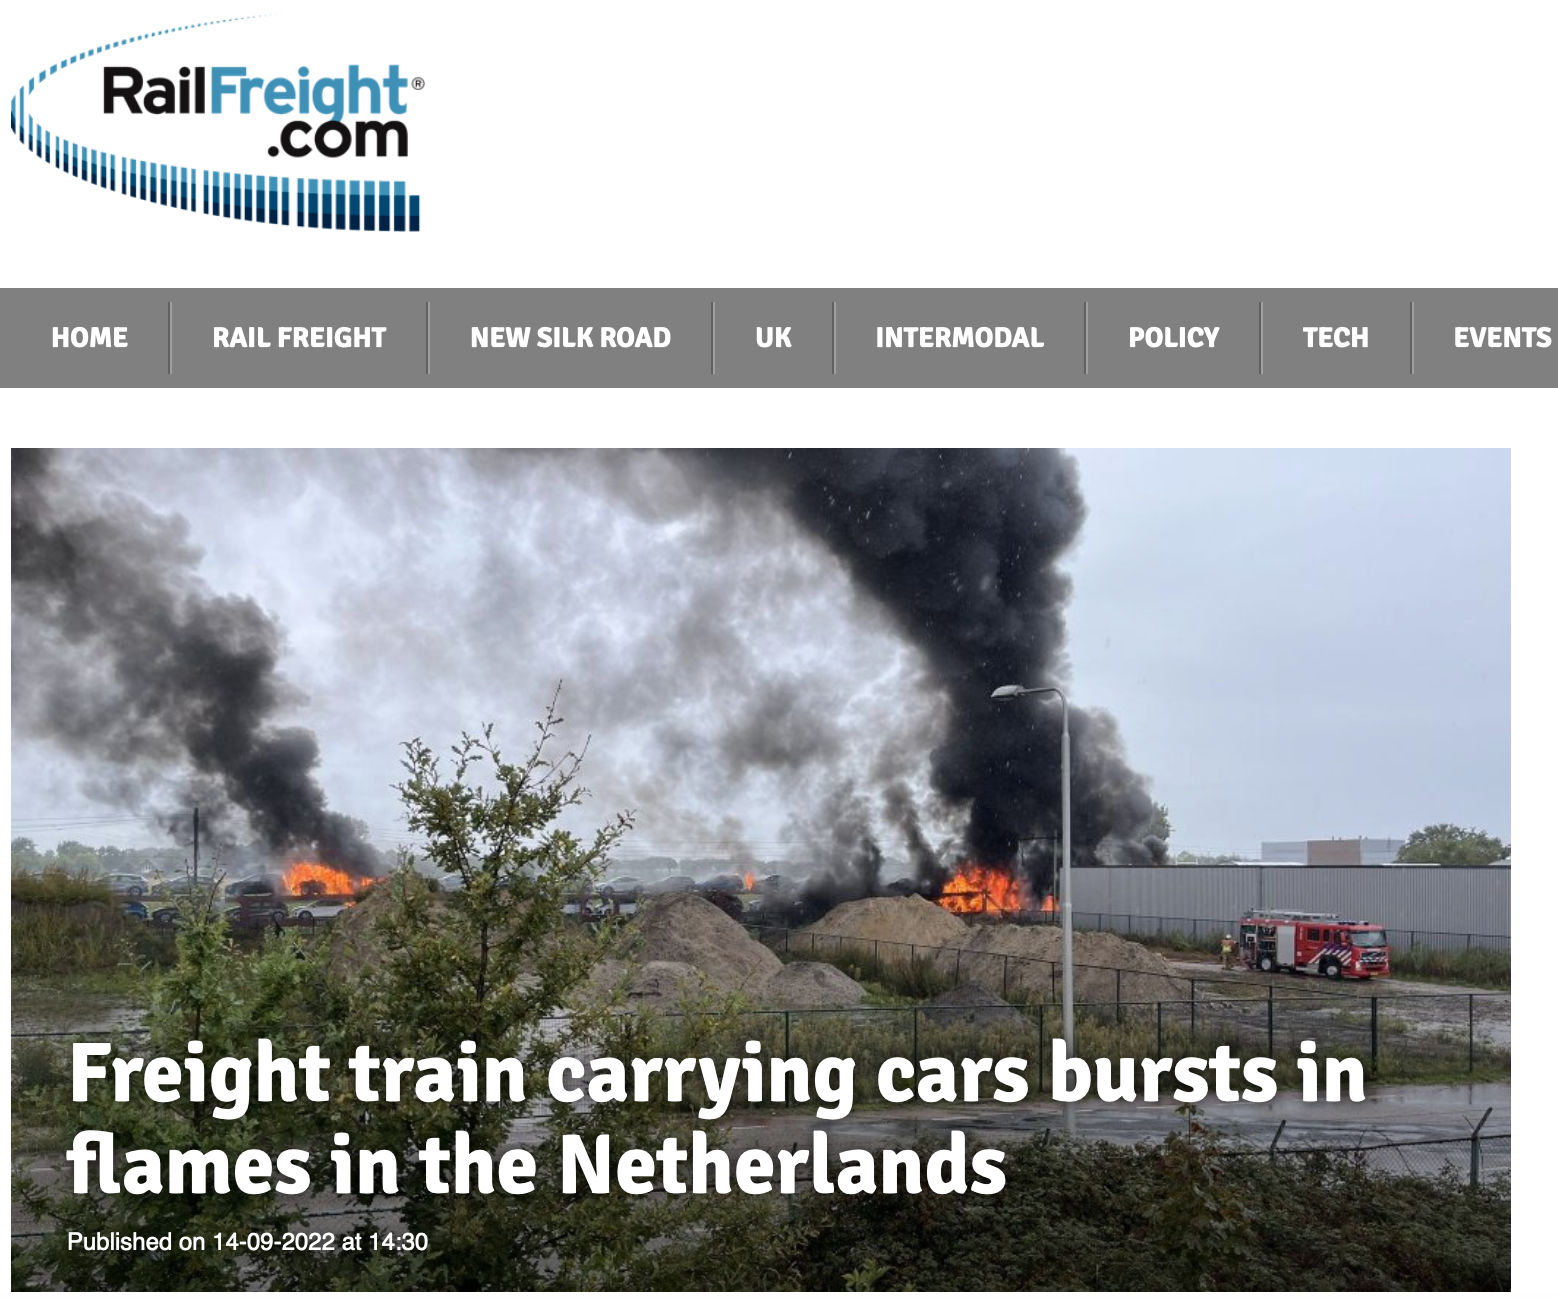 "Pociąg towarowy przewożący samochody stanął w płomieniach w Holandii"